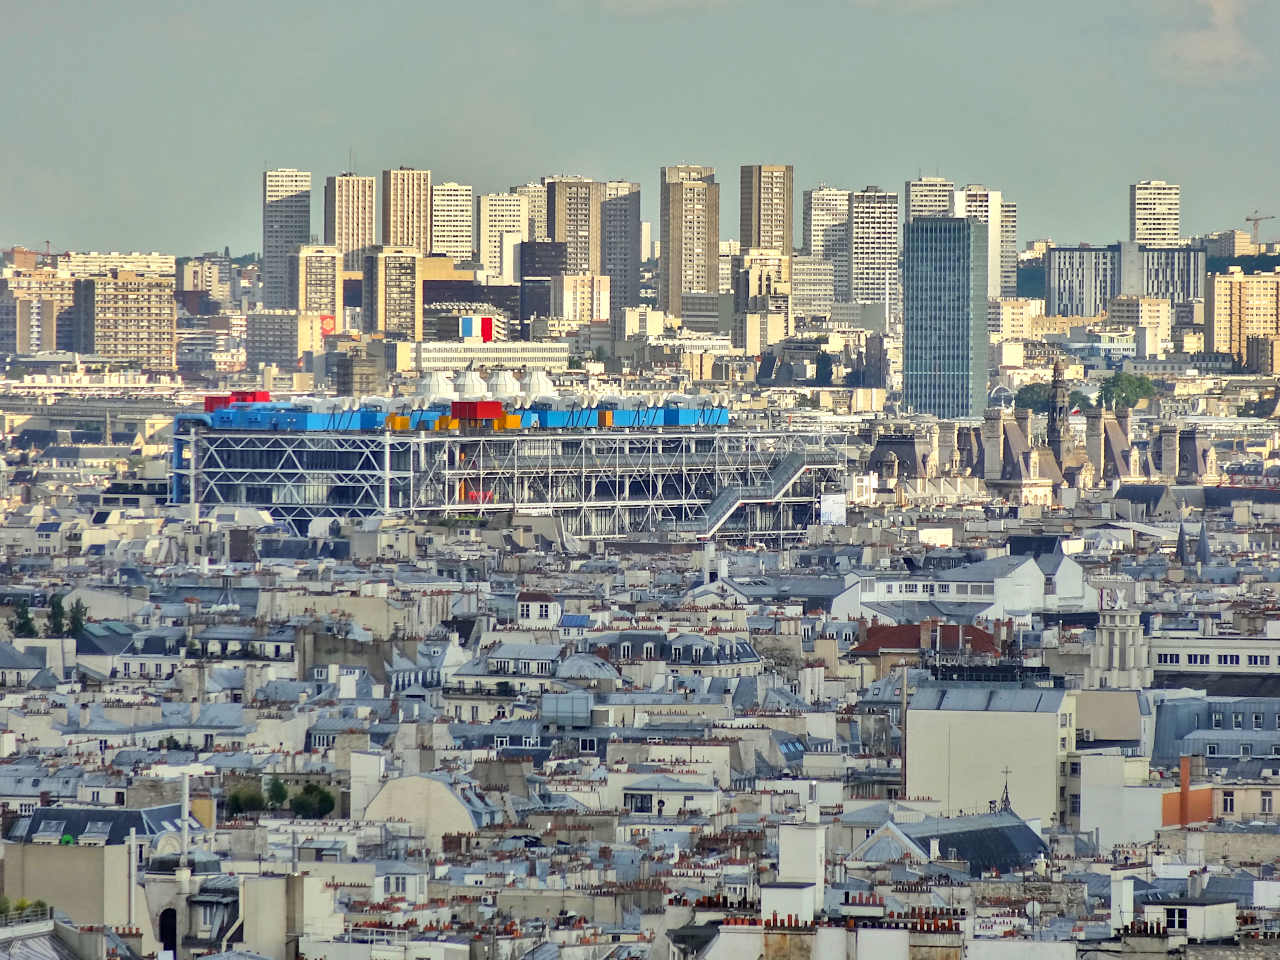 Centre Pompidou au milieu des immeubles parisiens, vu depuis Montmartre